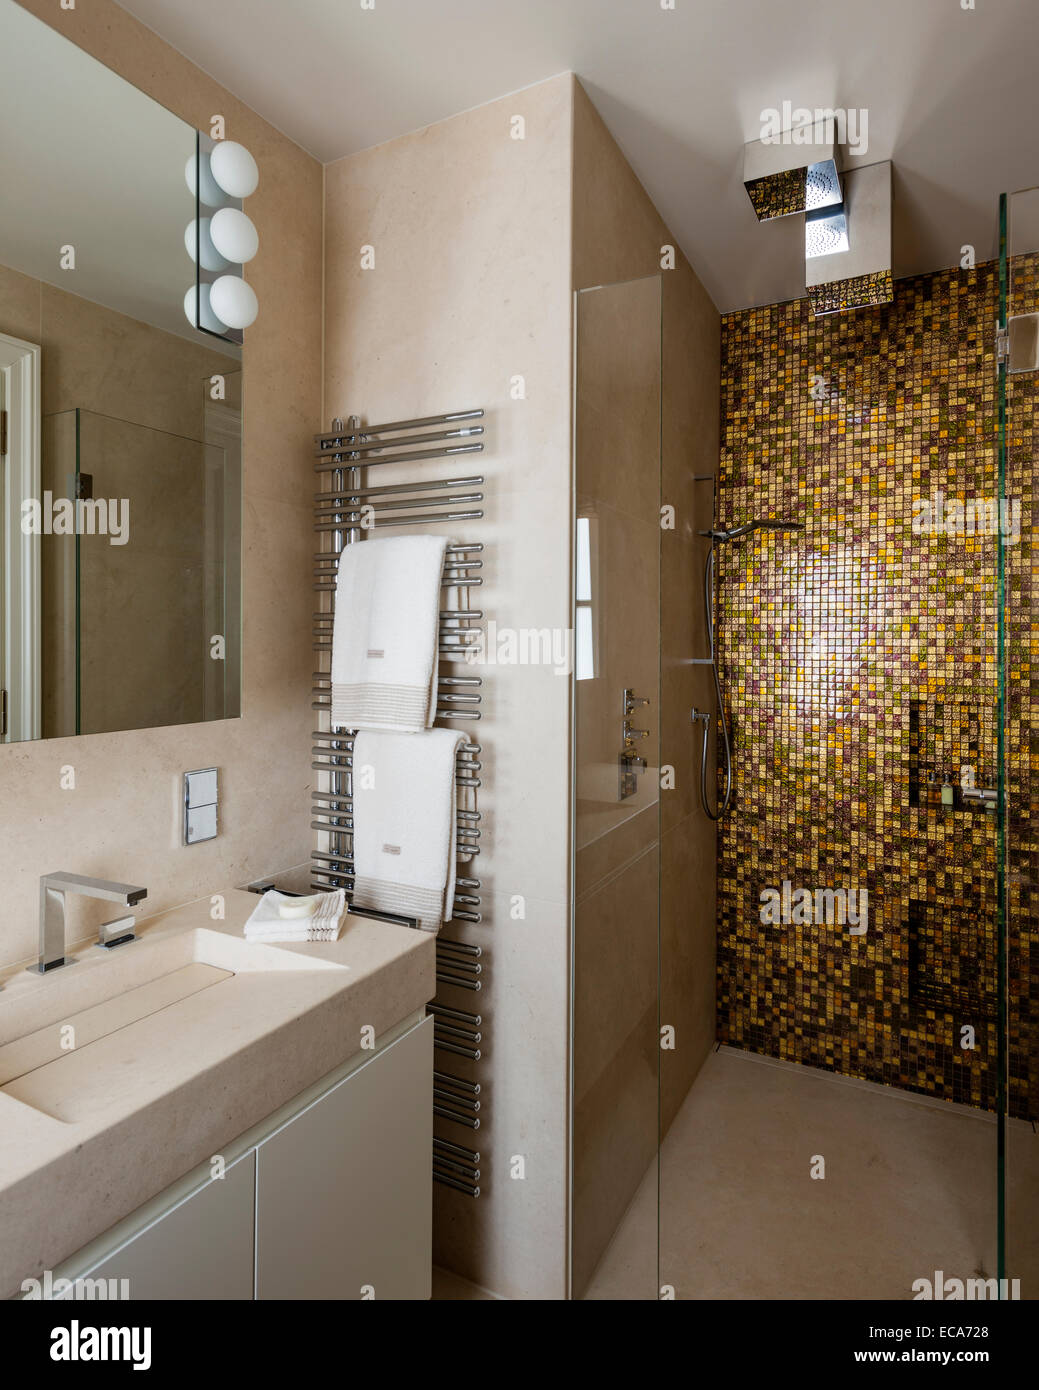 Doppel-Waschtisch und Bad mit Gold geflieste Dusche Stockfotografie - Alamy